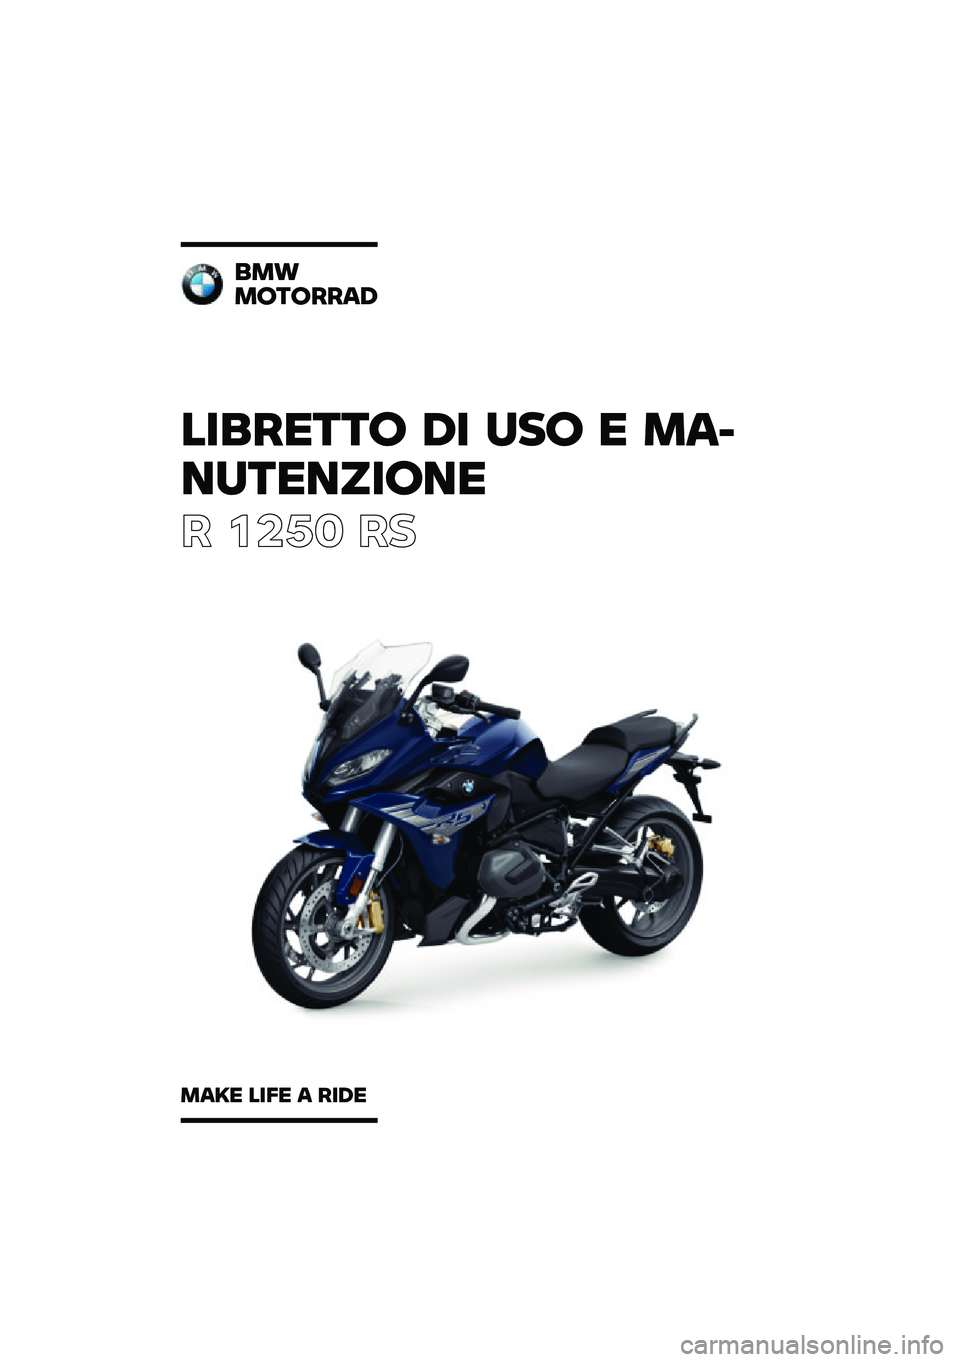 BMW MOTORRAD R 1250 RS 2020  Libretto di uso e manutenzione (in Italian) ��������\b �	� �
��\b � �\f�
�
��
������\b��
� ����	 ��
��\f�
�\f�\b��\b���
�	
�\f�
�� ���� �
 ���	� 